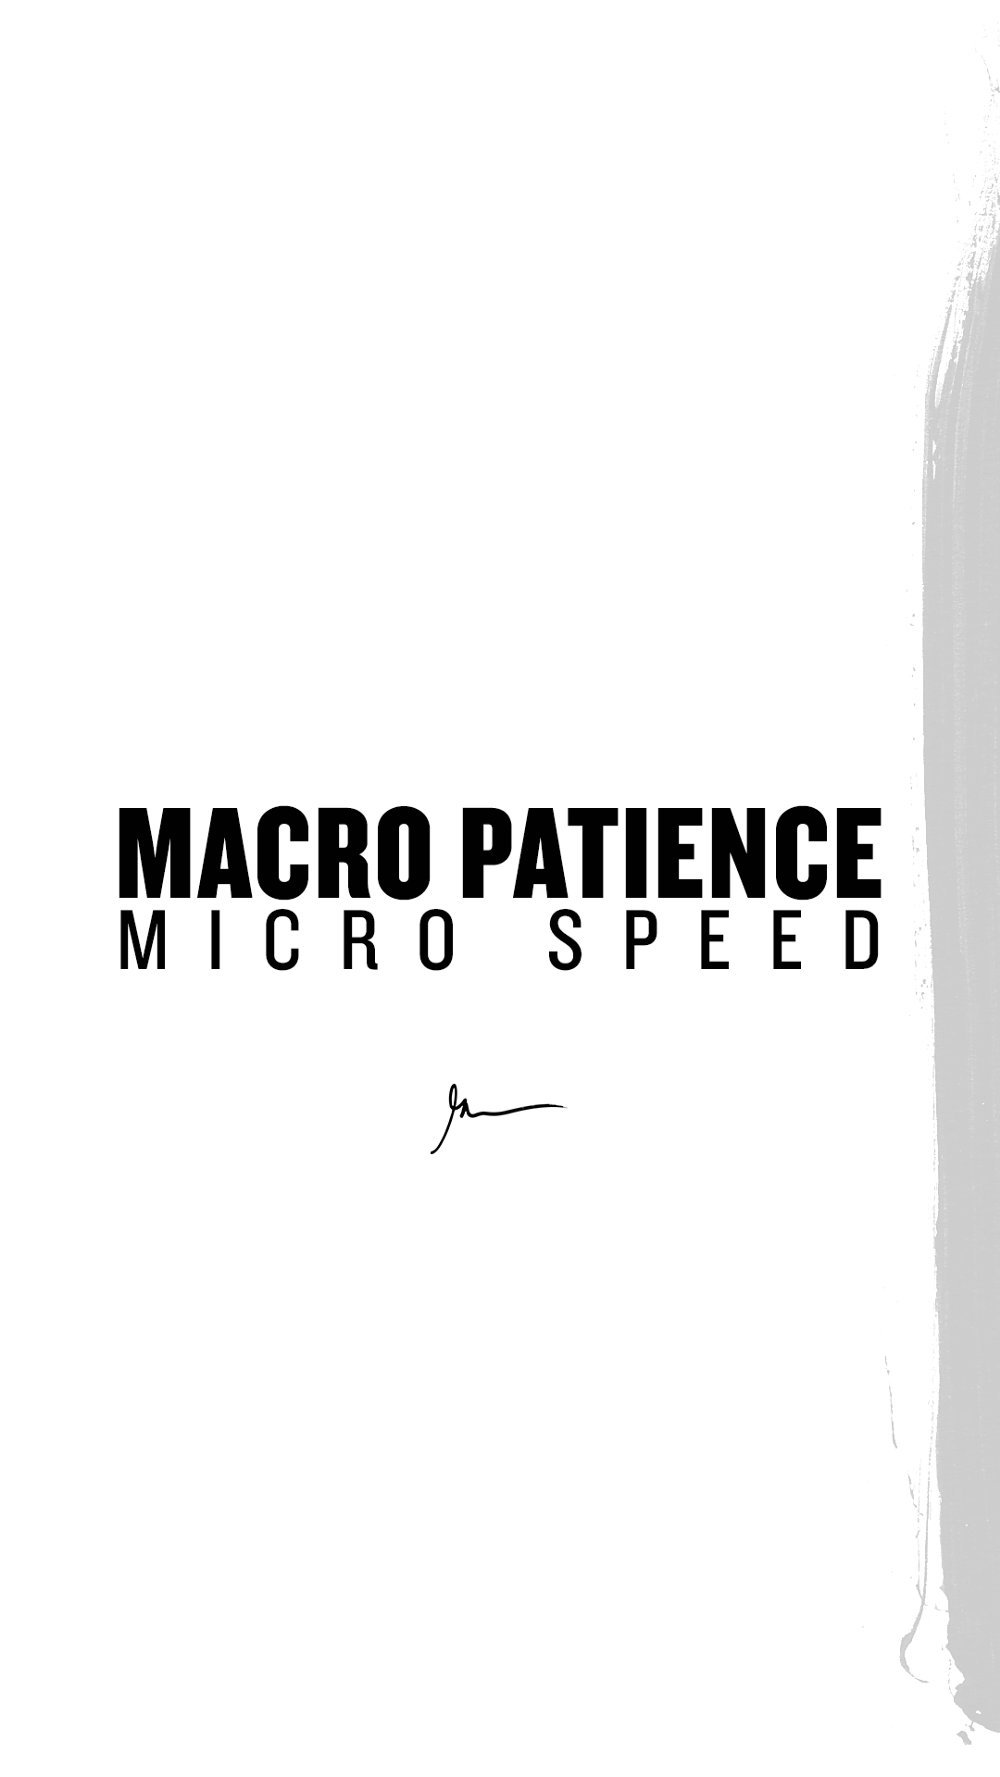 Macro patience micro speed